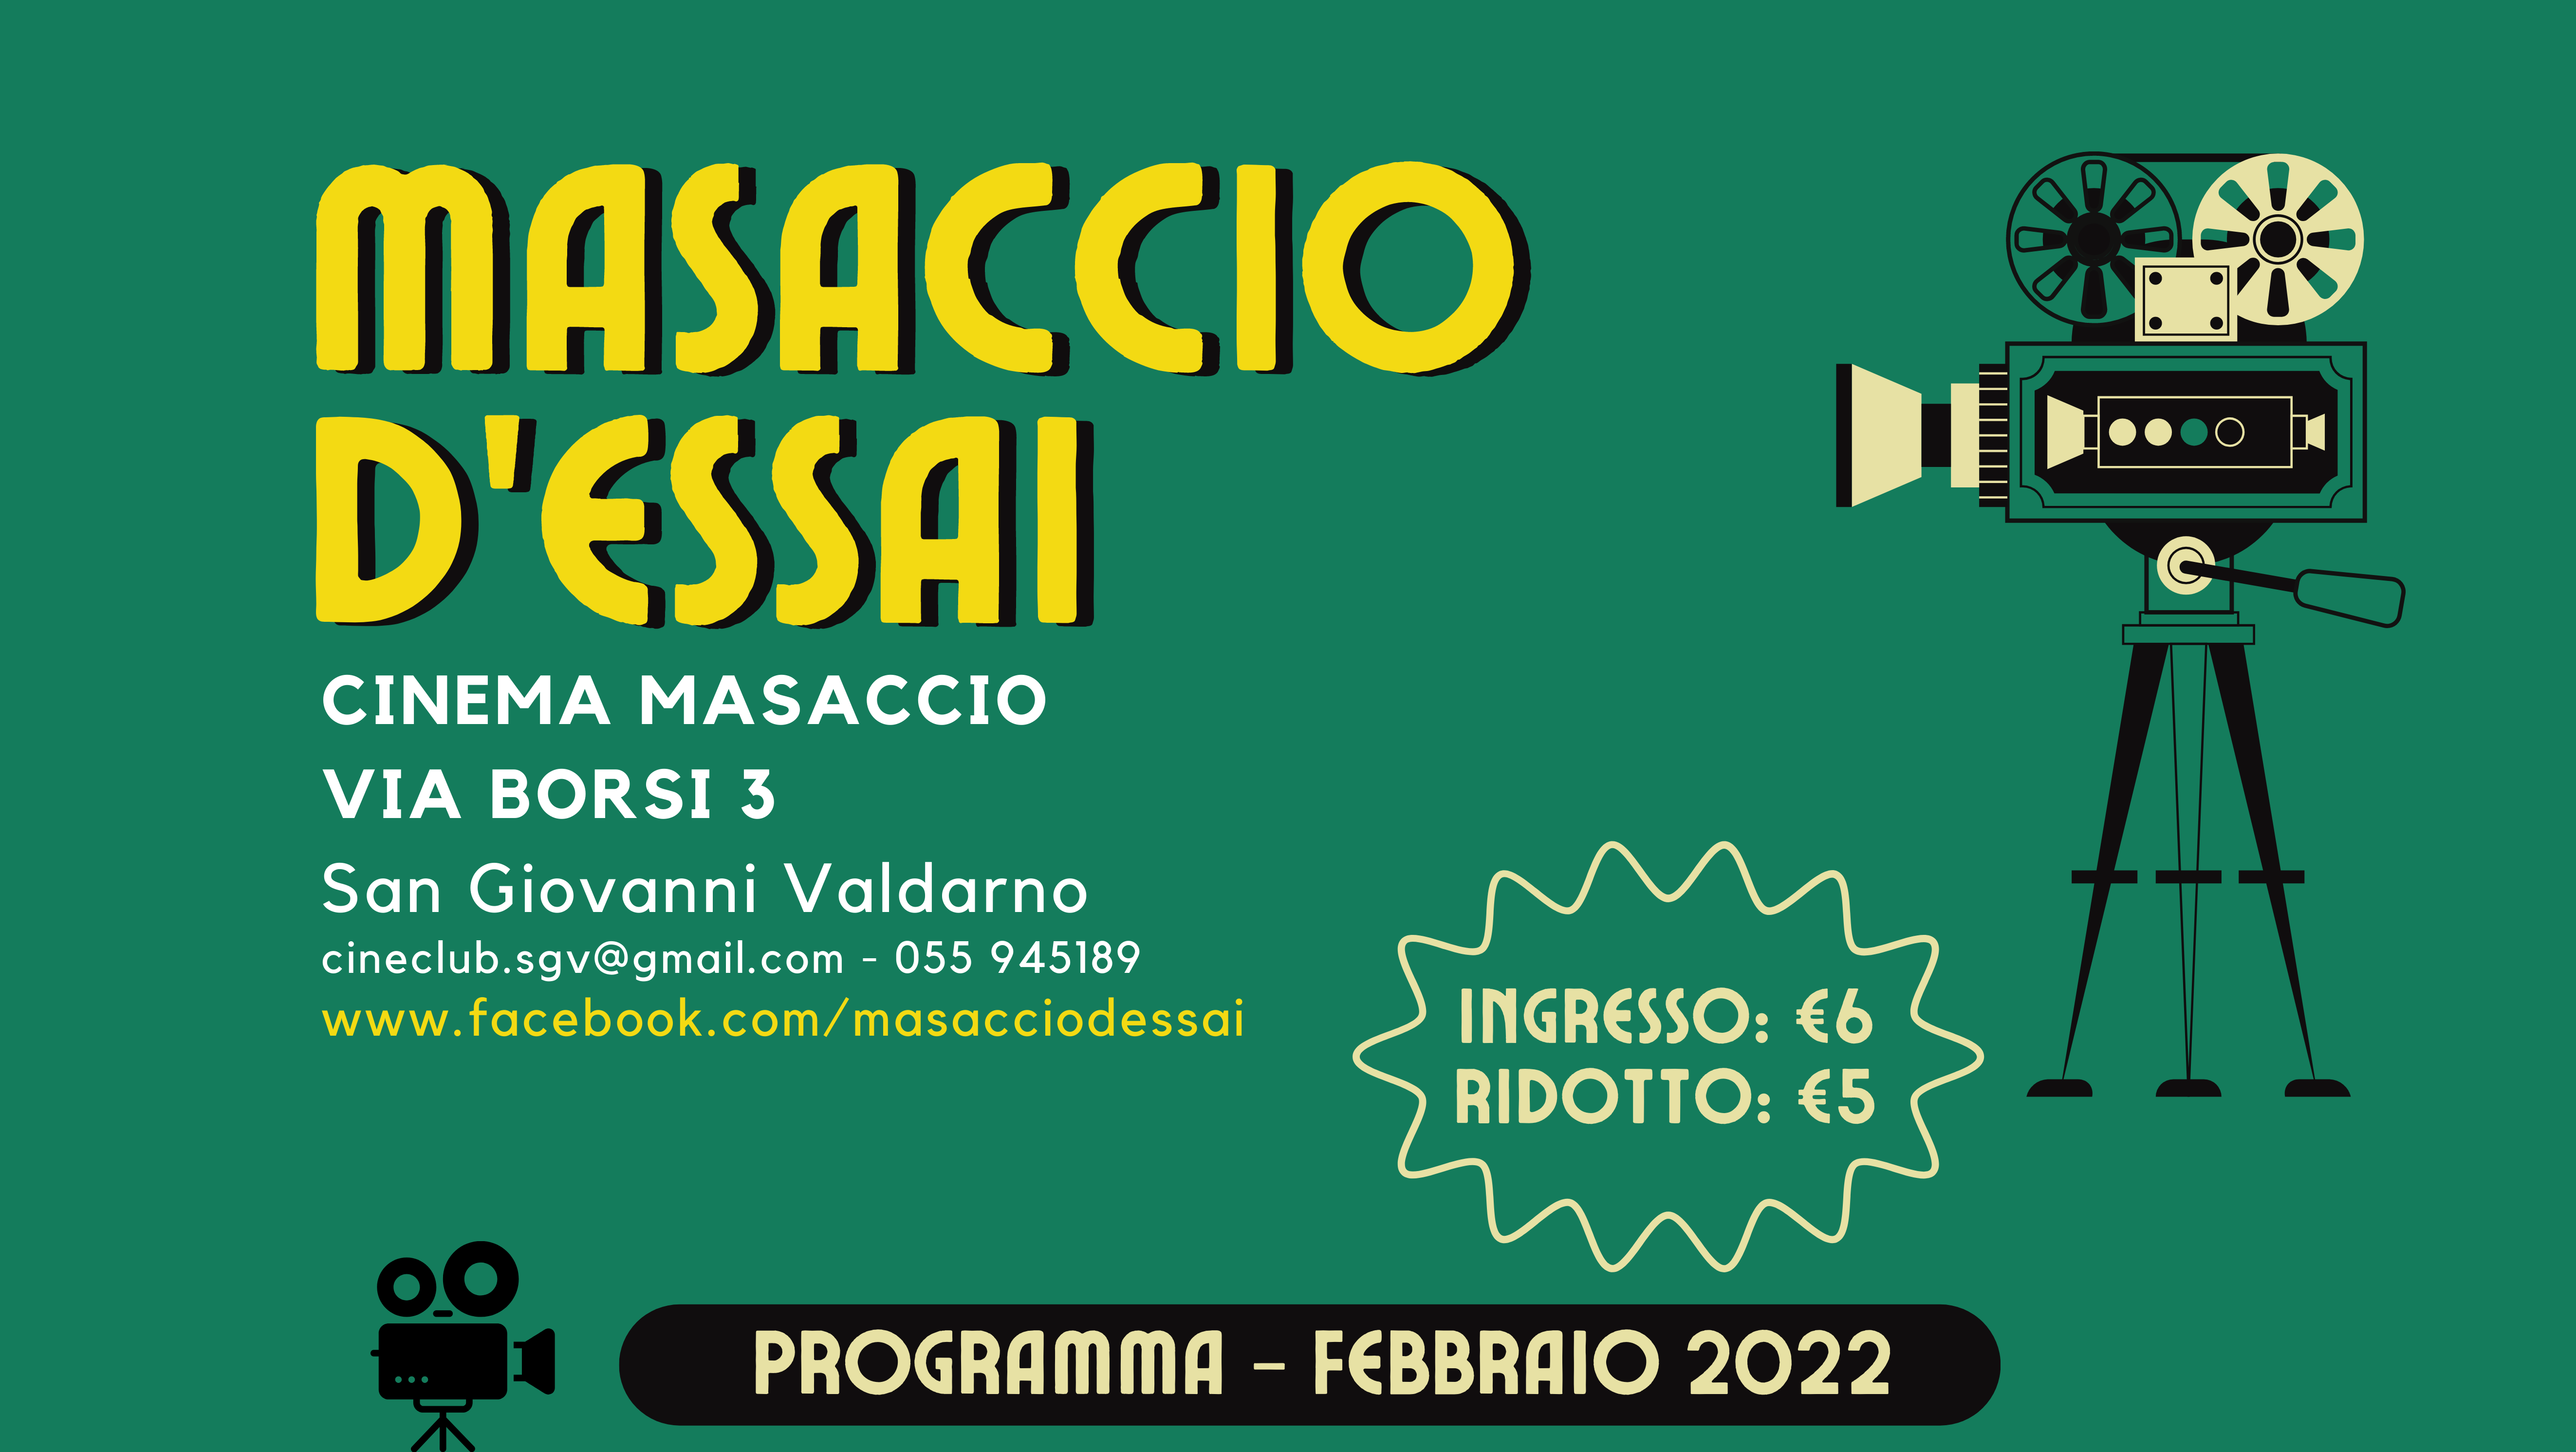 Masaccio d’essai Febbraio 2022